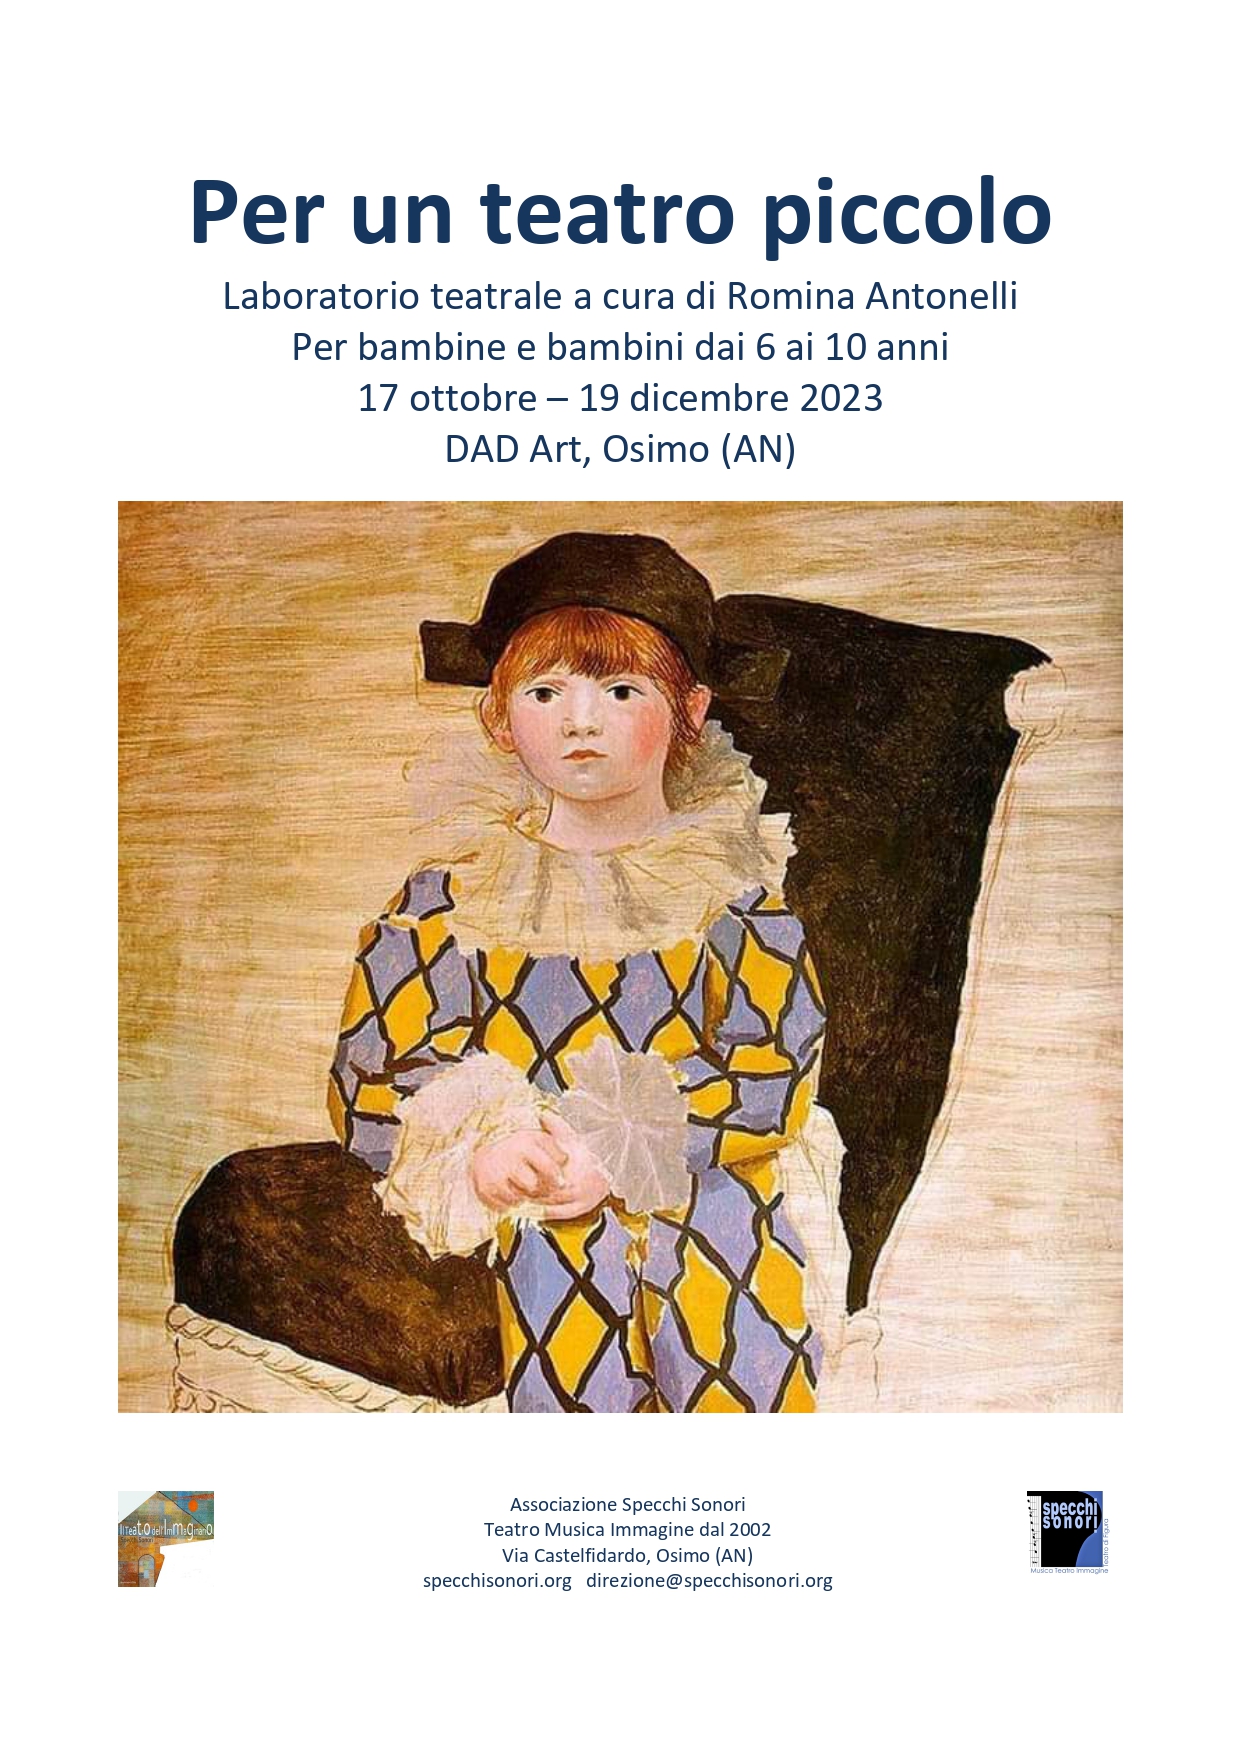 locandina Per un teatro piccolo docente Romina Antonelli DAD Art Osimo AN page 0001